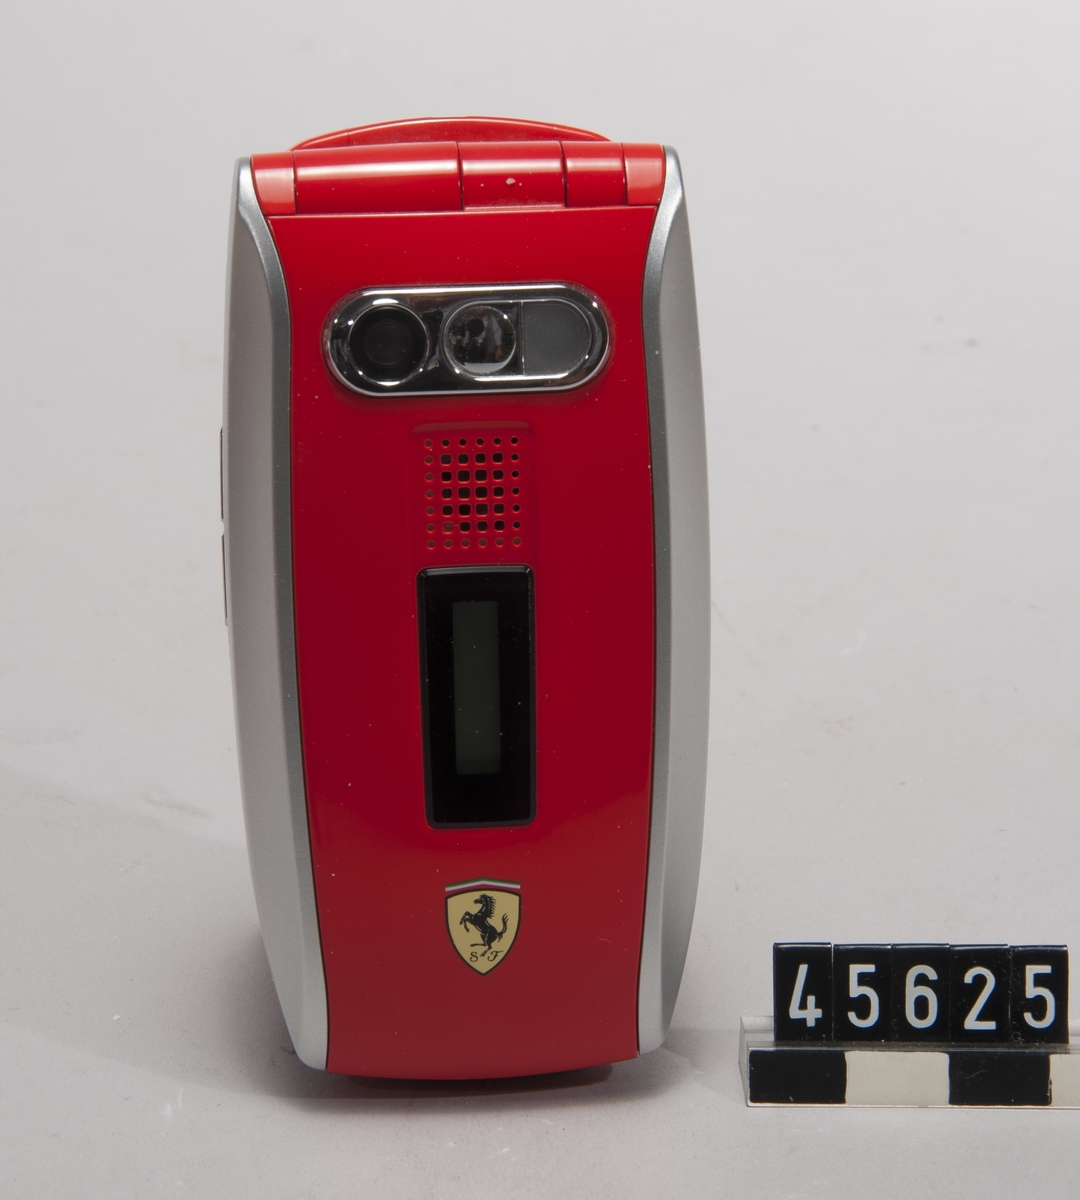 GSM mobiltelefon 900/1800/1900 GPRS, Sharp Corp typ GX25 Ferrari Edition. Röd, med bilmärket Ferraris logotyp. Obegagnad i originalkartong, med laddare, handsfree, handbok och CD-skiva. Operatörslåst till Vodafone Sveriges SIM-kort.
Tillbehör: Laddare, handsfree, CD-skiva med drivrutiner/programvara, batteri.